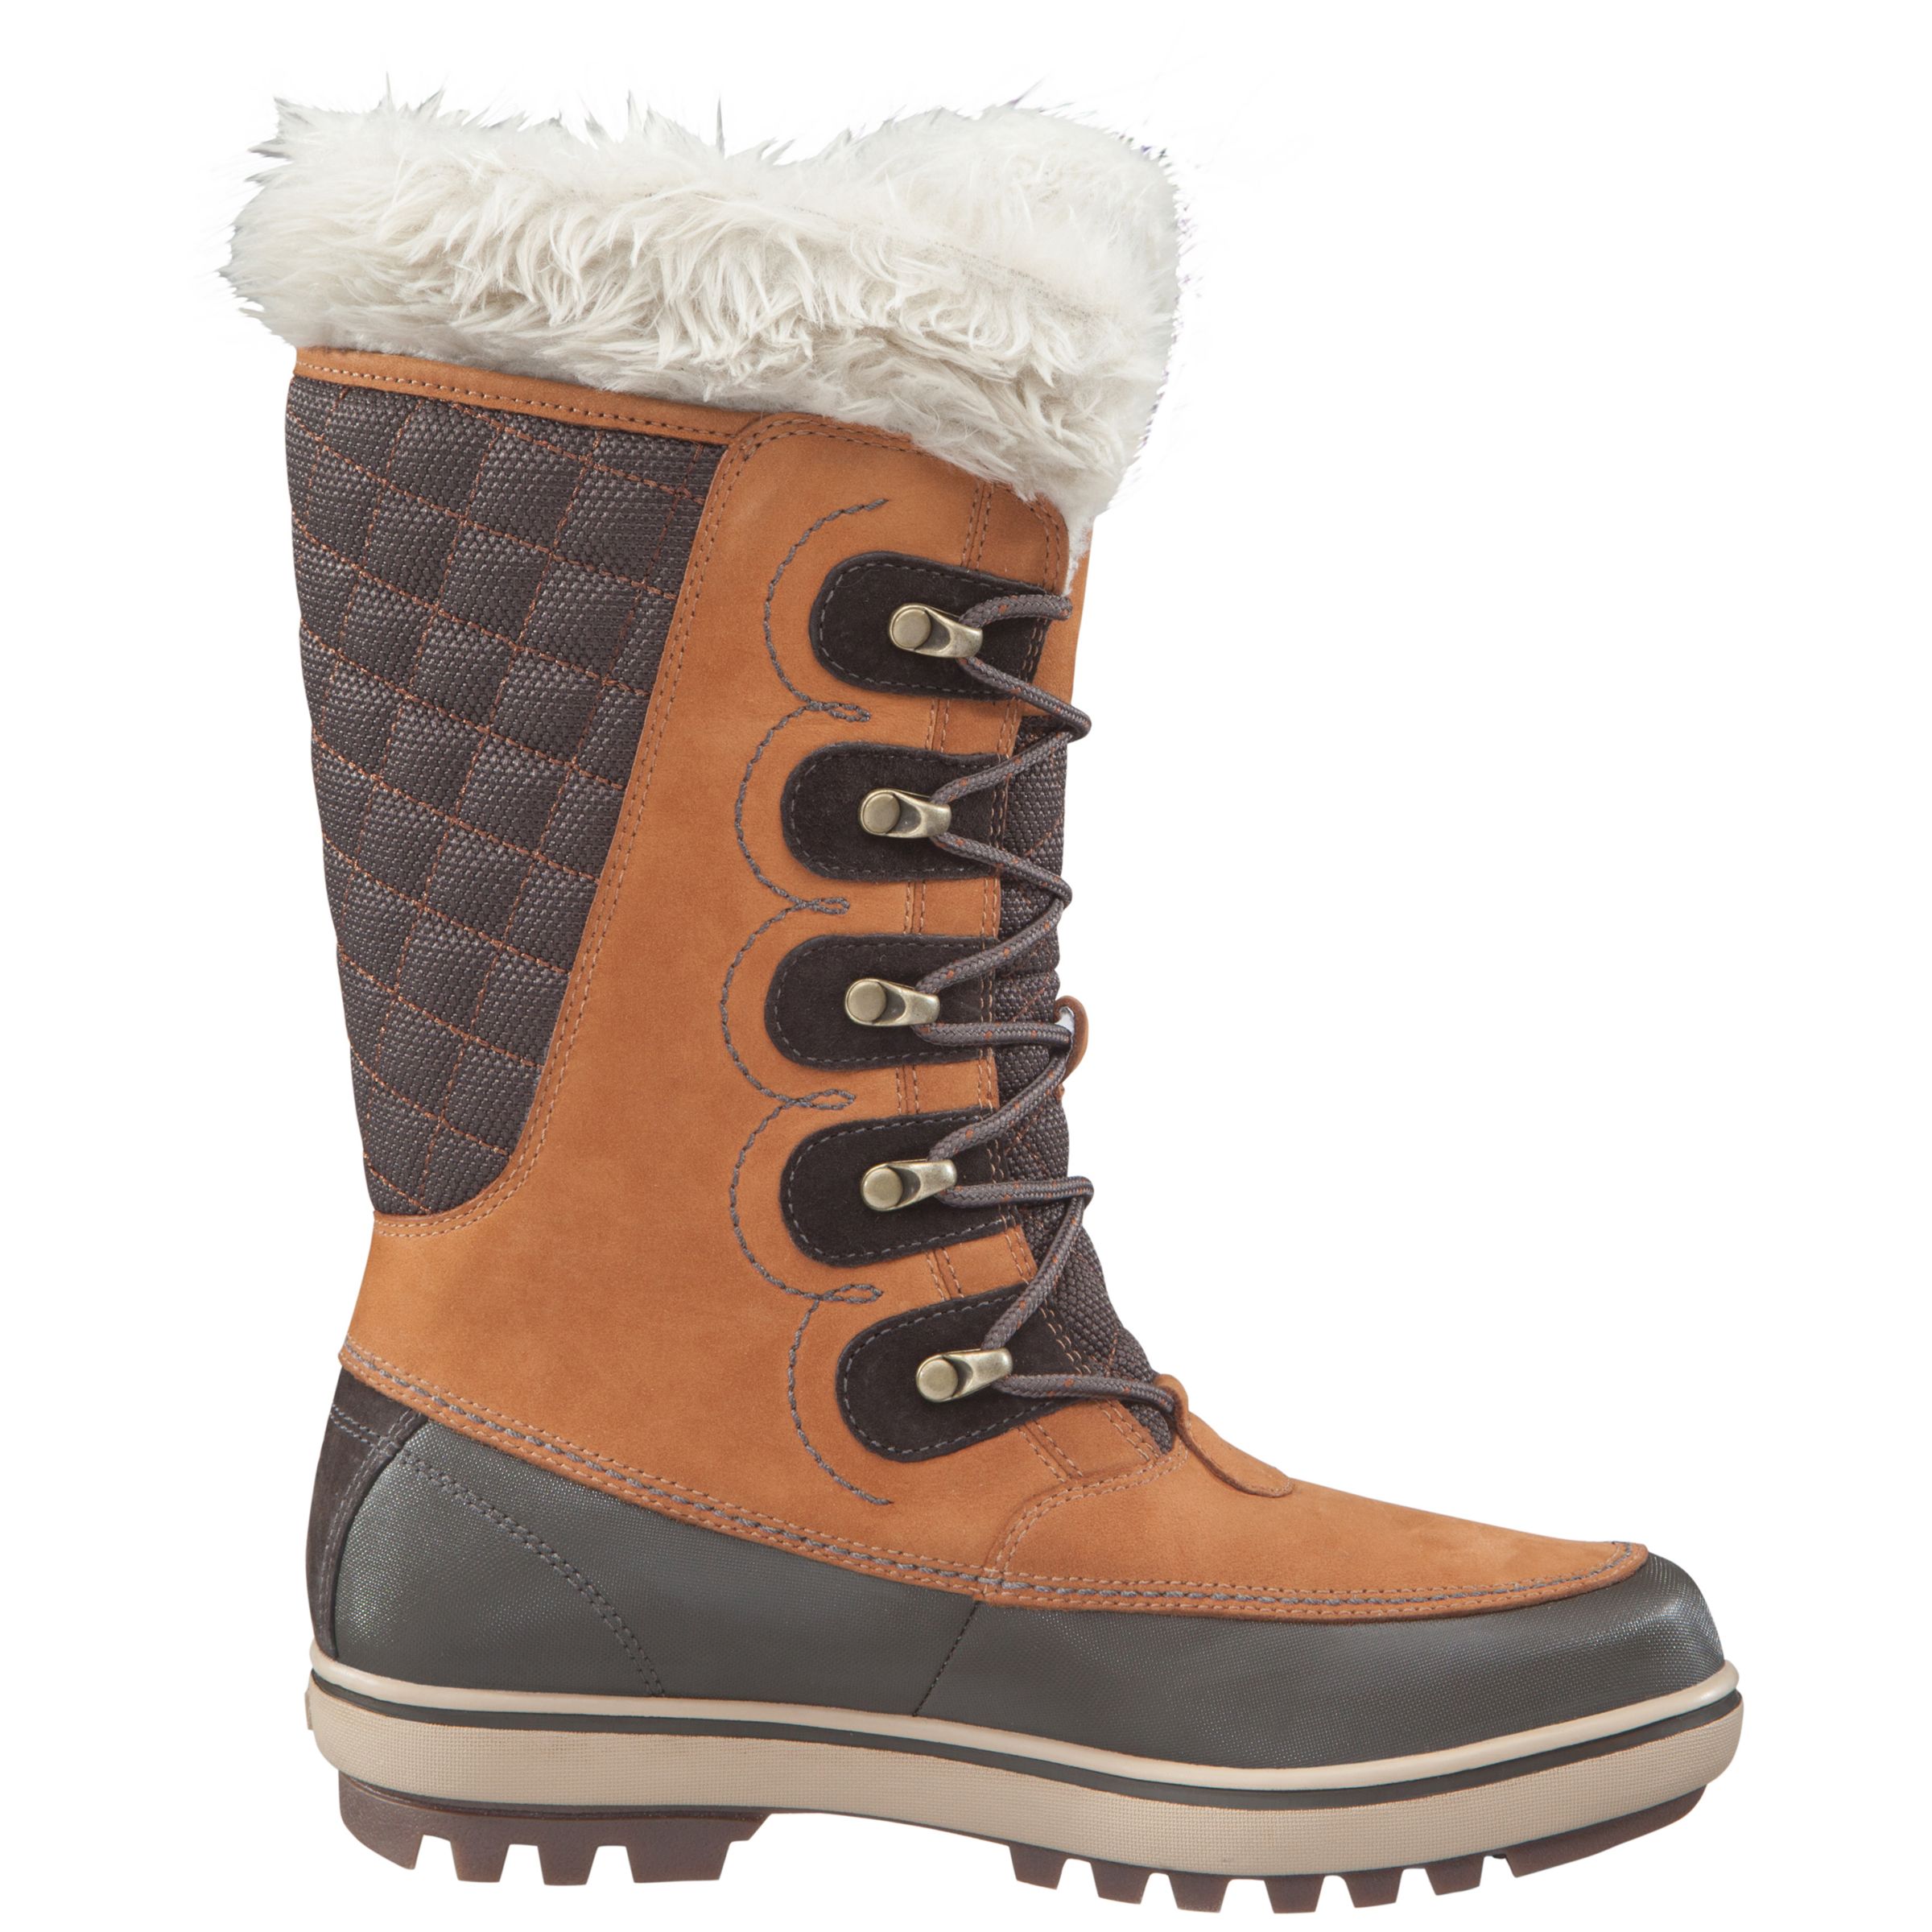 Helly Hansen Garibaldi Waterproof Leather Women's Boots, Brown